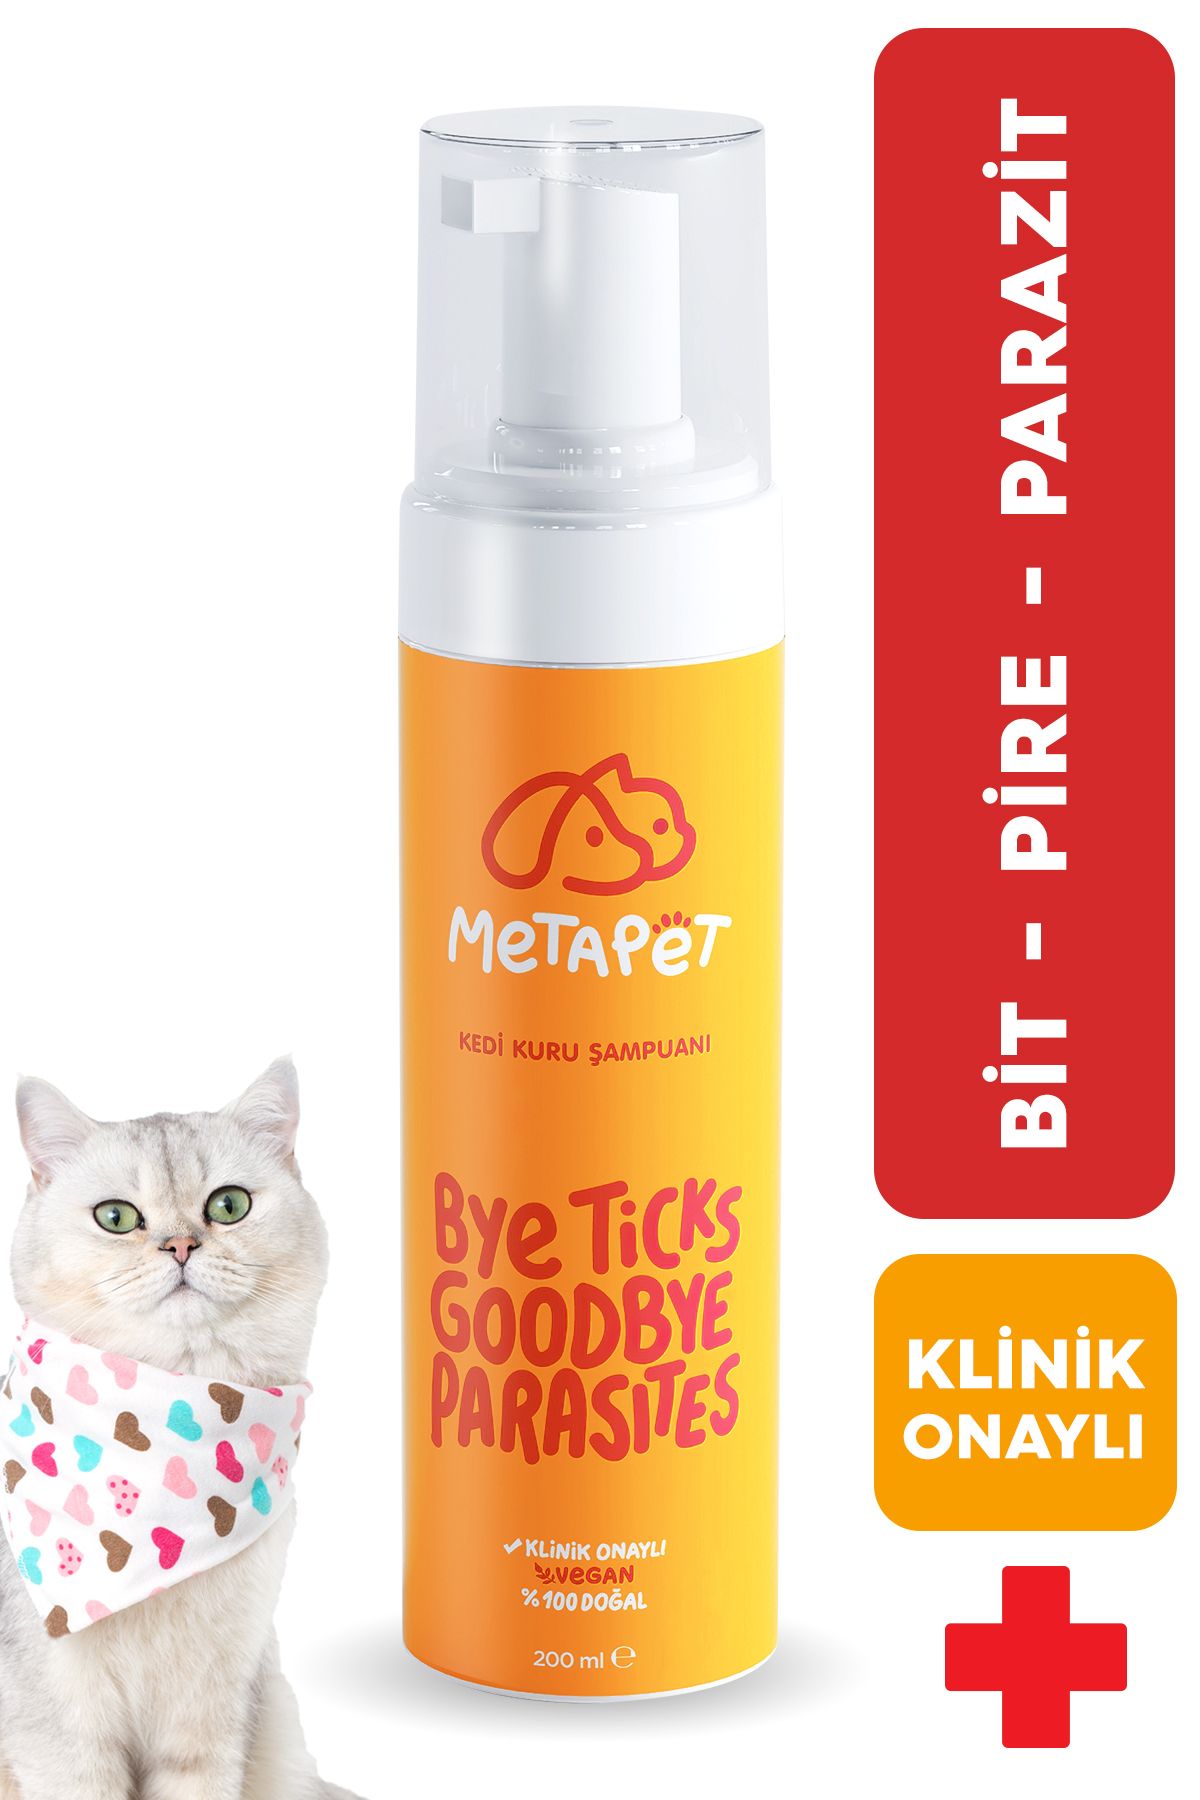 Metapet Kedi Kuru Şampuan, Bit Pire Dış Parazit Kene Önleyici Damla Tasması Tarağı Ile Kullanılabilir